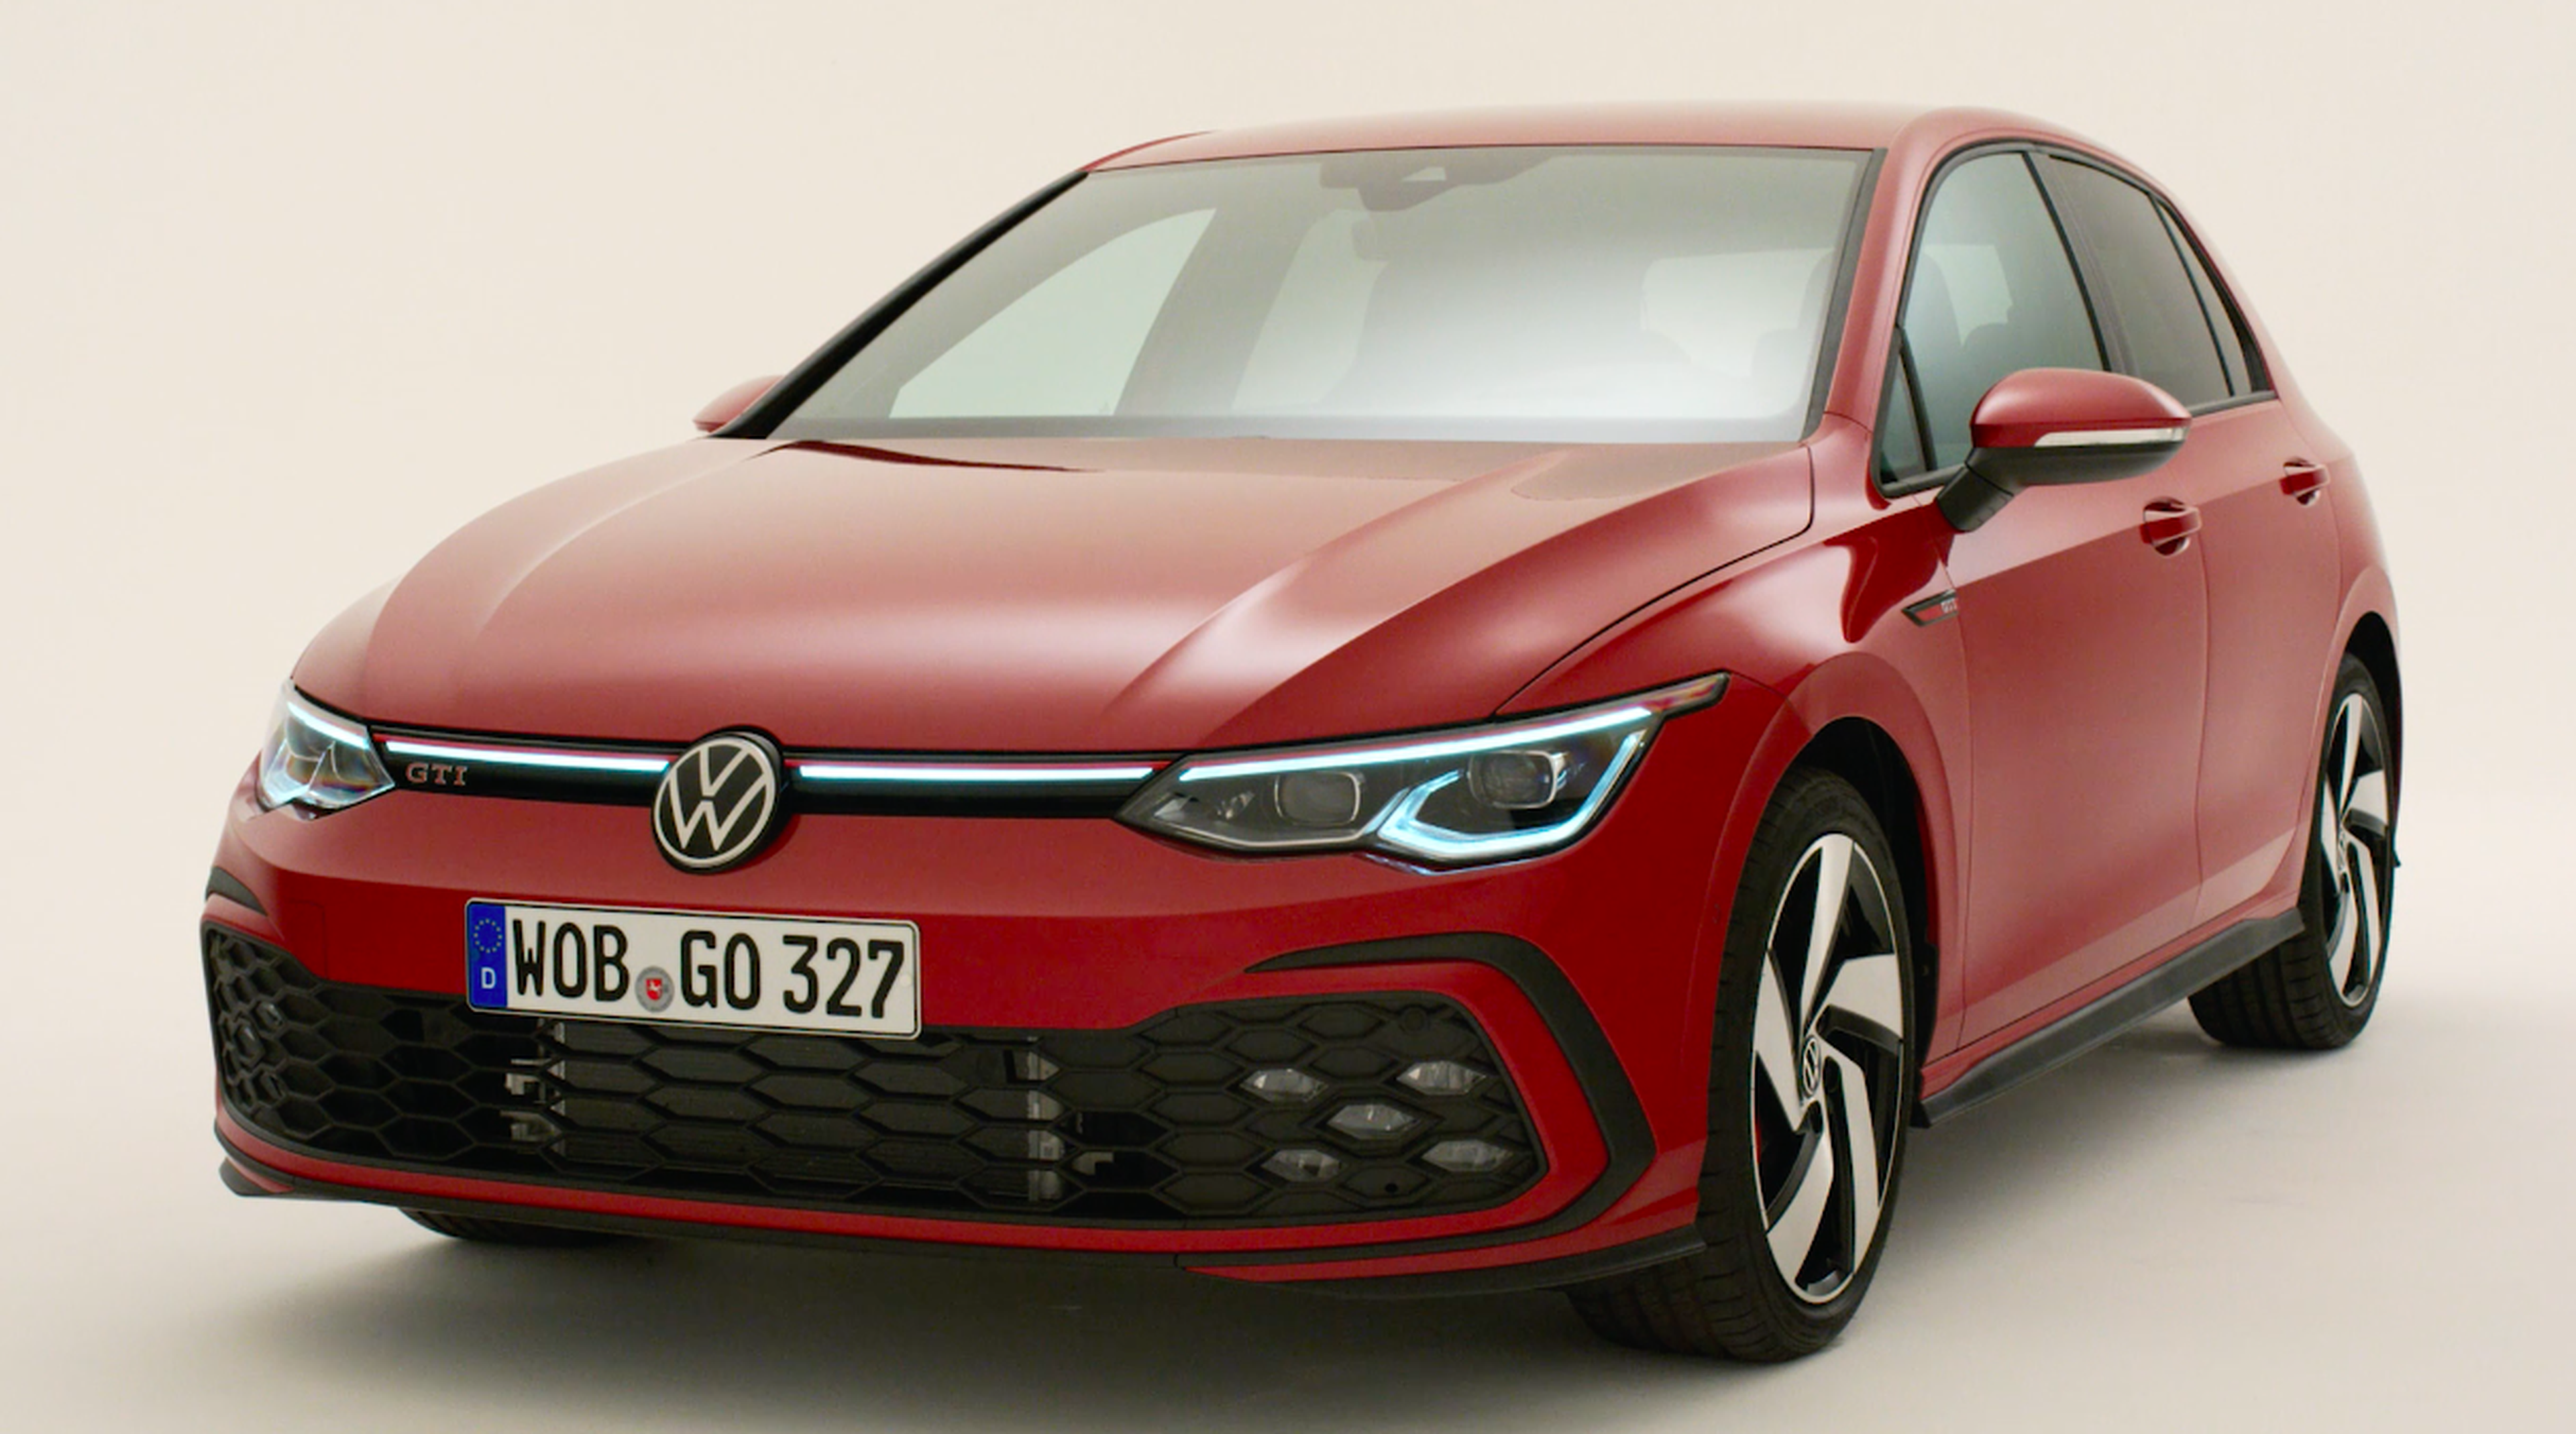 Volkswagen Golf GTI 2020, ya está aquí y lo hemos conocido en persona